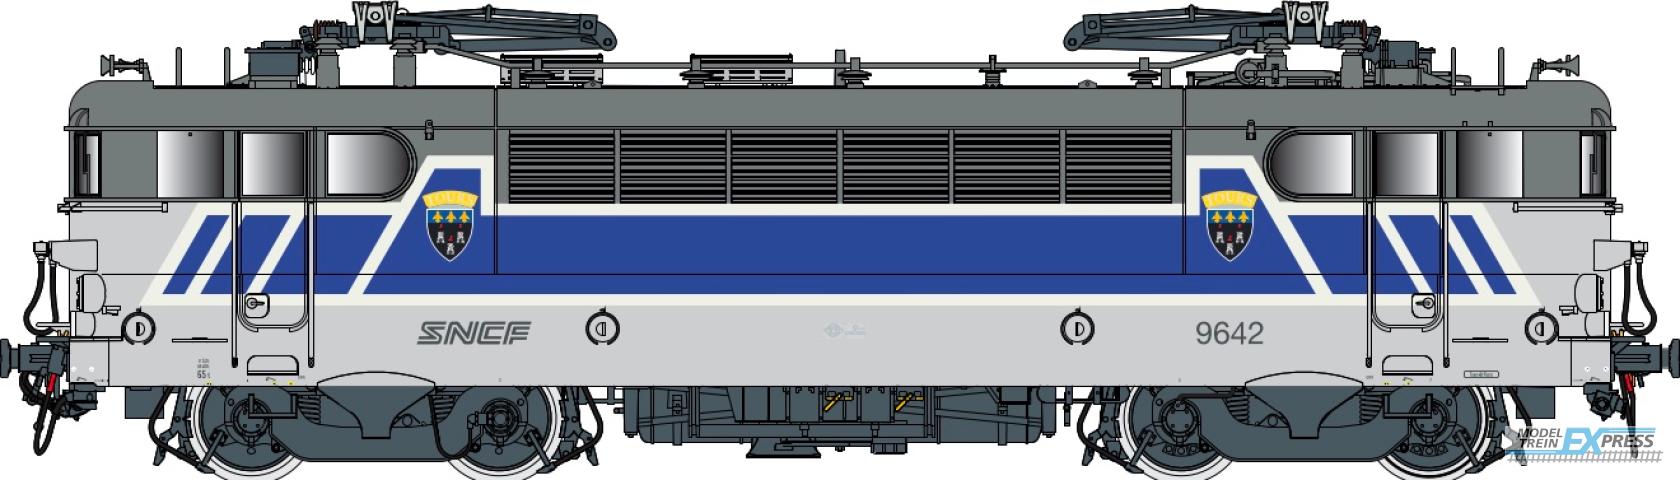 LS Models 10223S BB 9600, grijs/blauw/wit/oranje, Centre, noedels logo  /  Ep. V  /  SNCF  /  HO  /  DC SOUND  /  1 P.